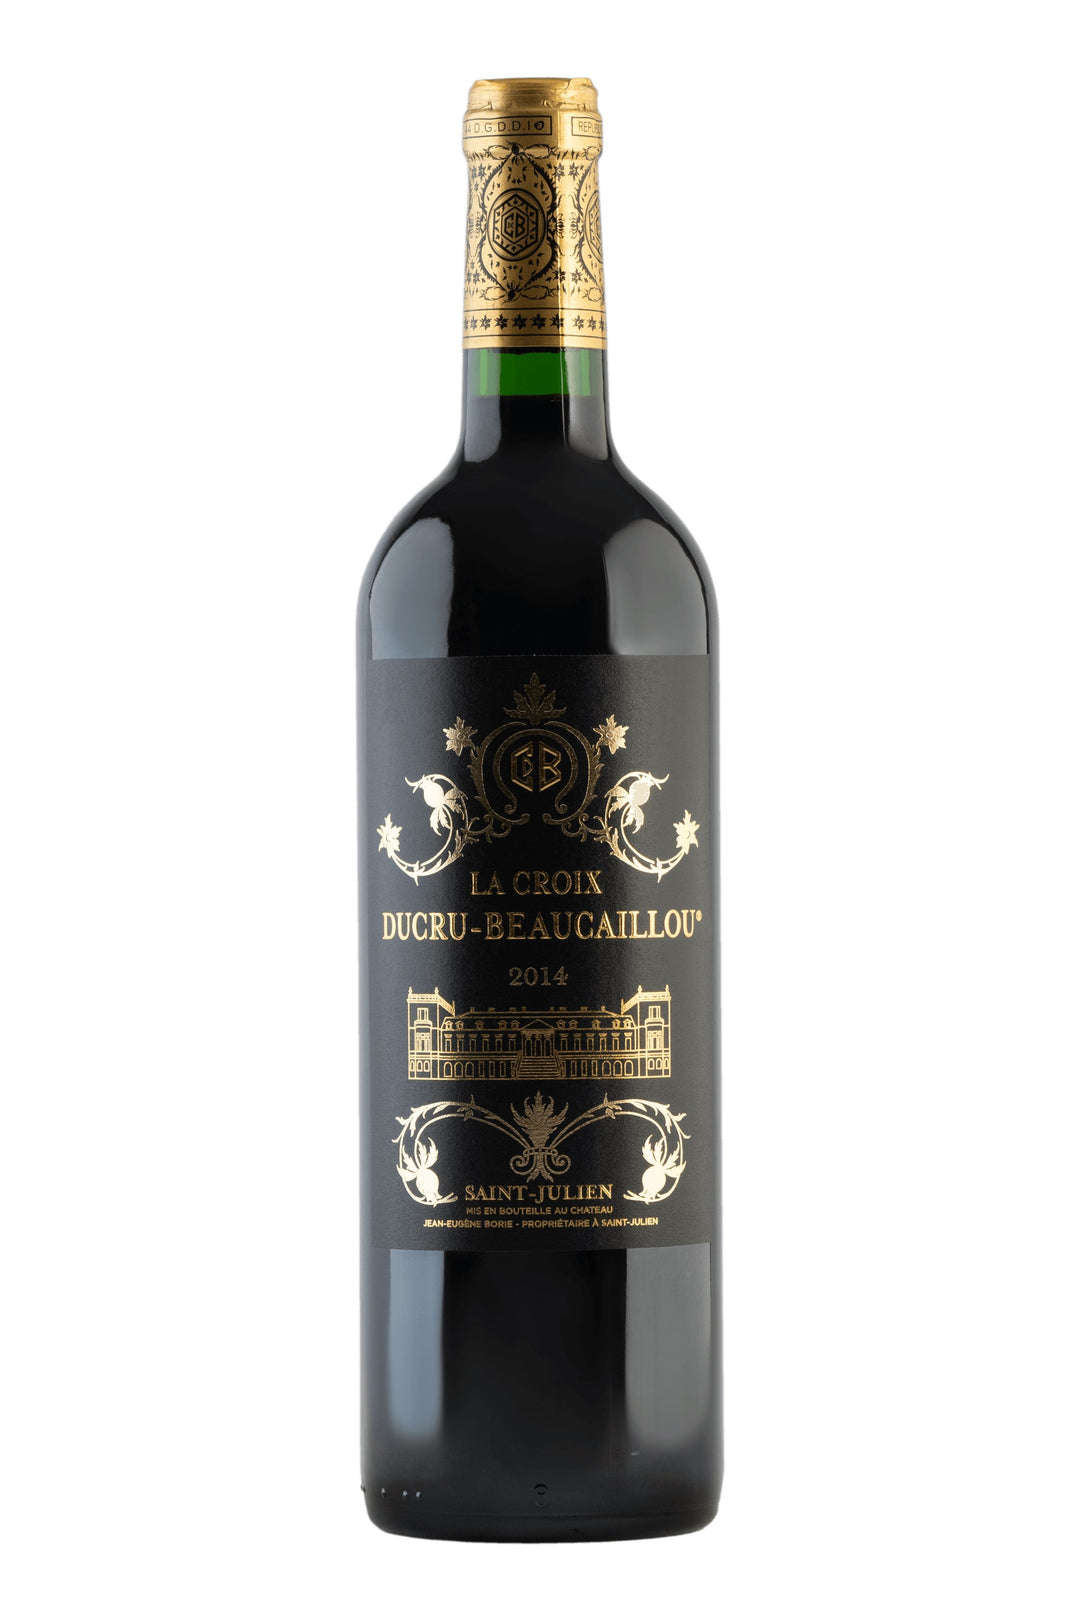 La Croix Ducru Beaucaillou 2 ème vin - Default Title (V000550)